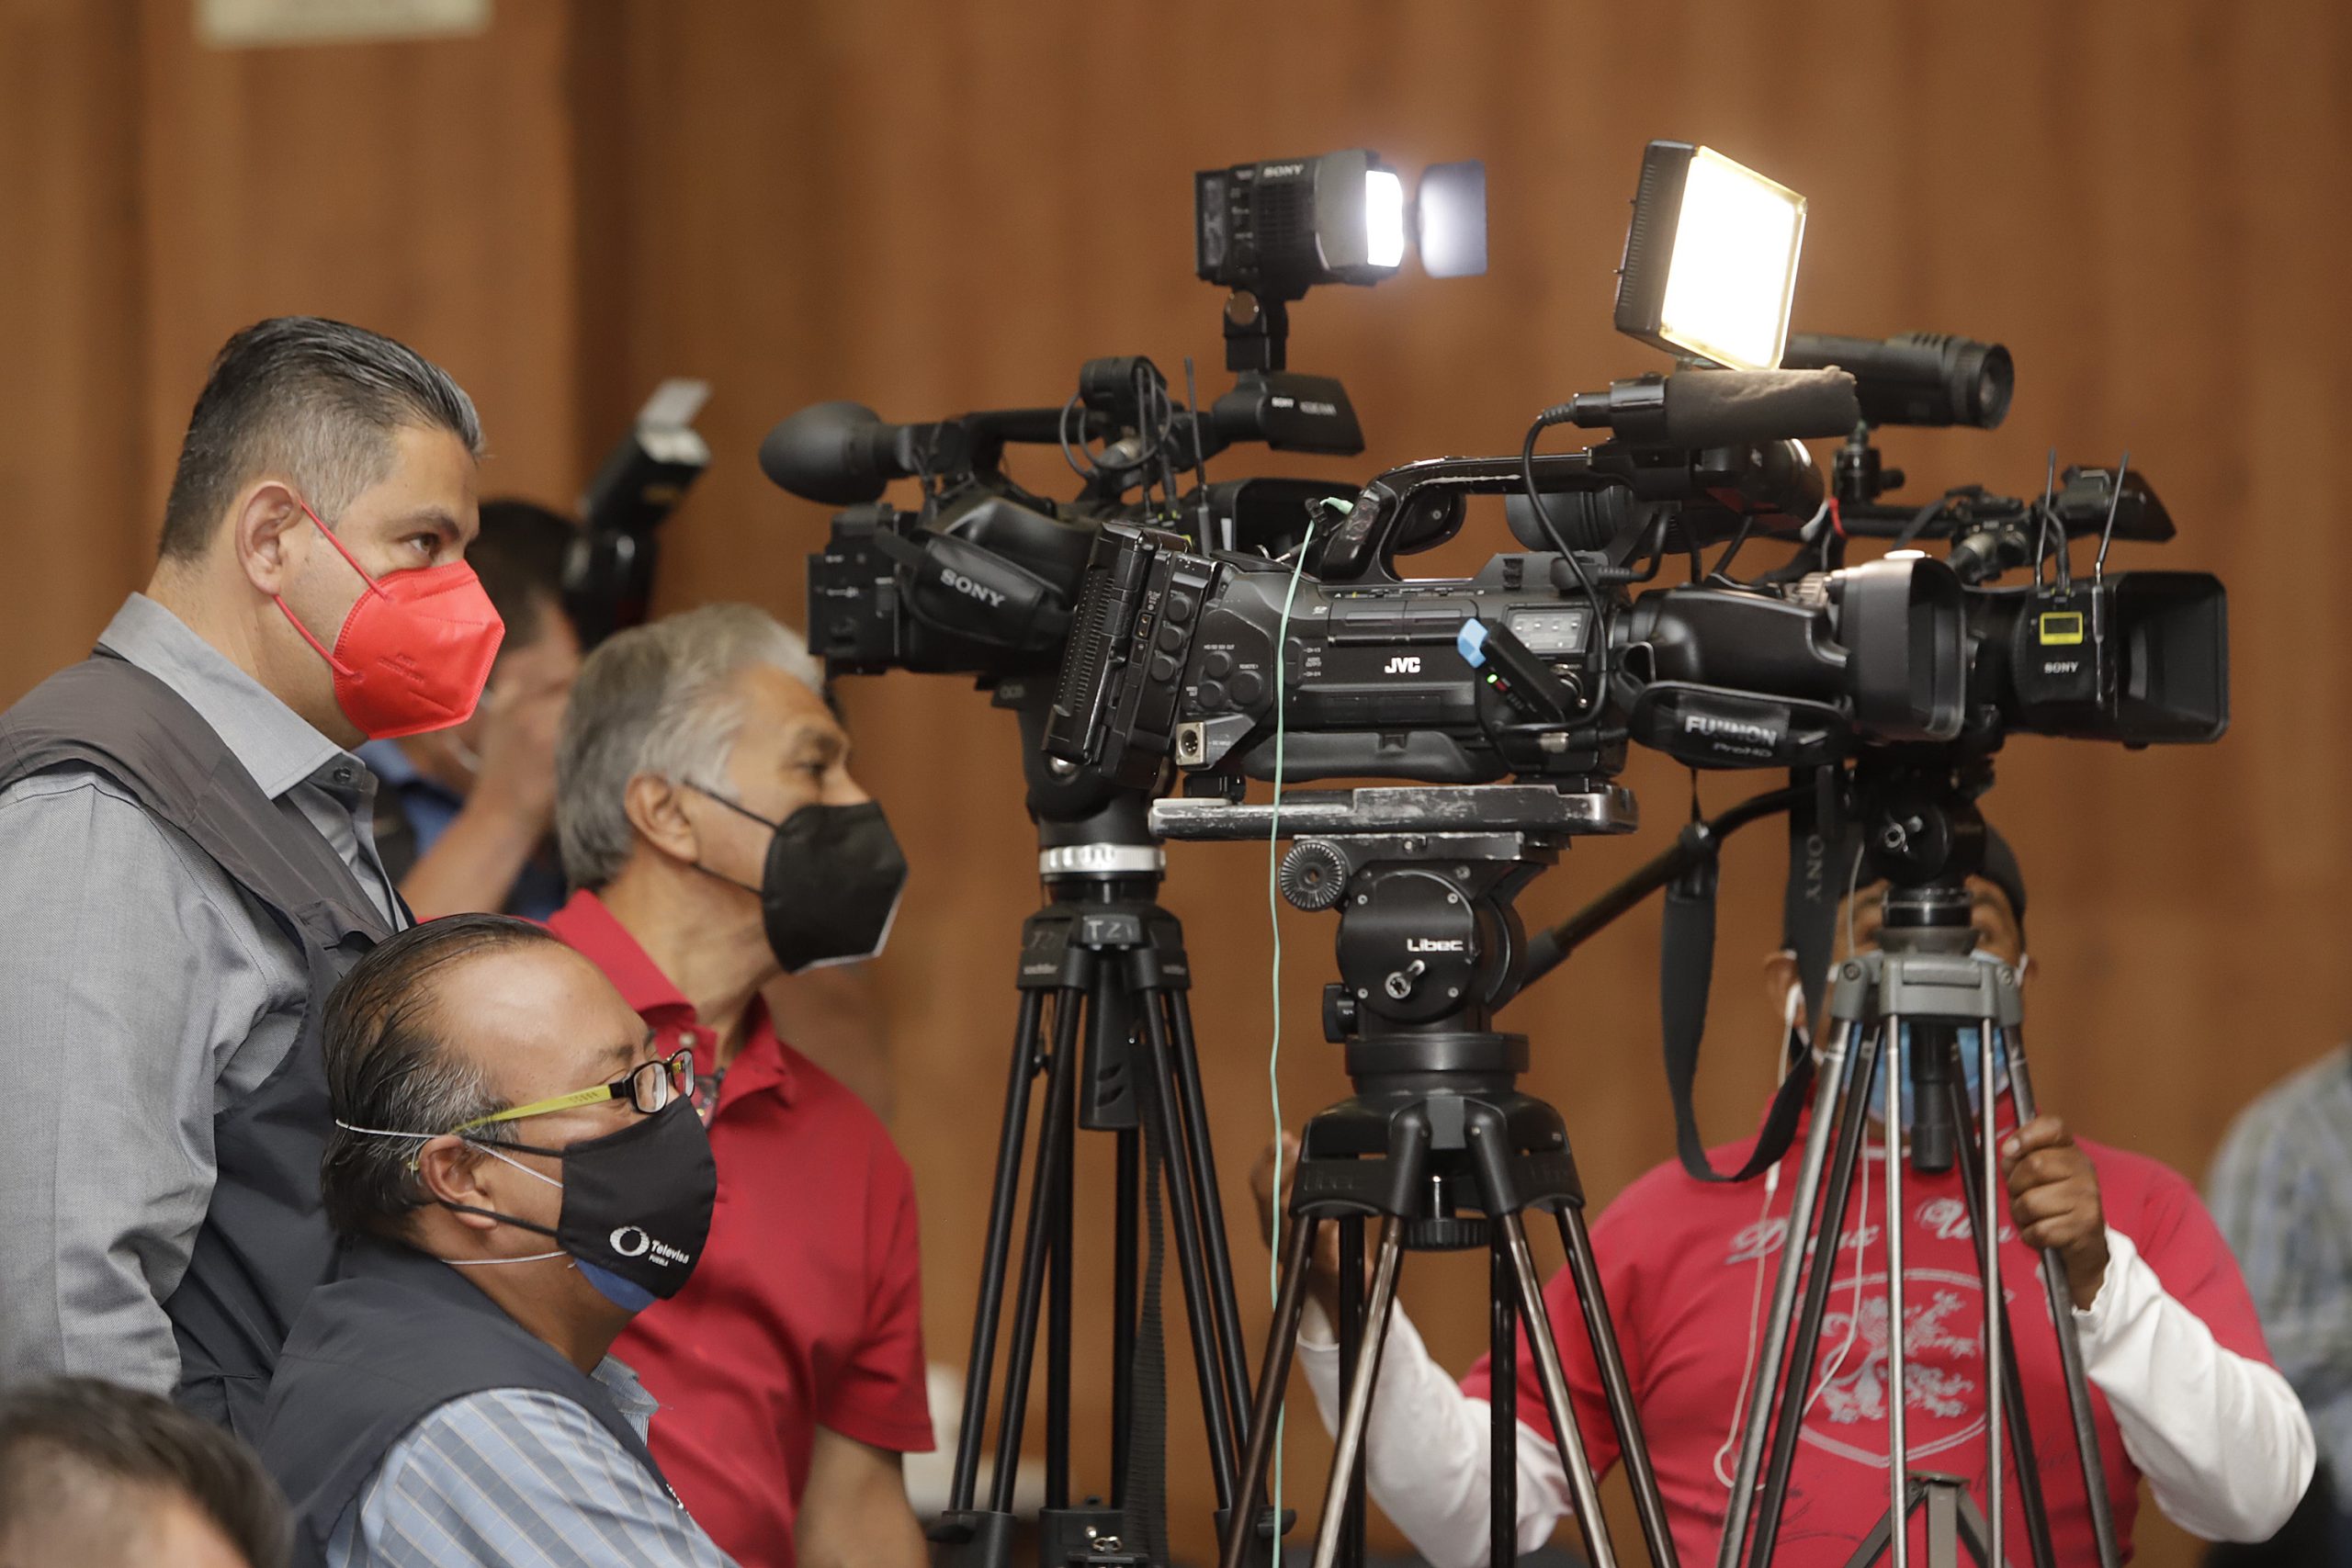 Comuna gasta 105 mdp en contratos de difusión mediática